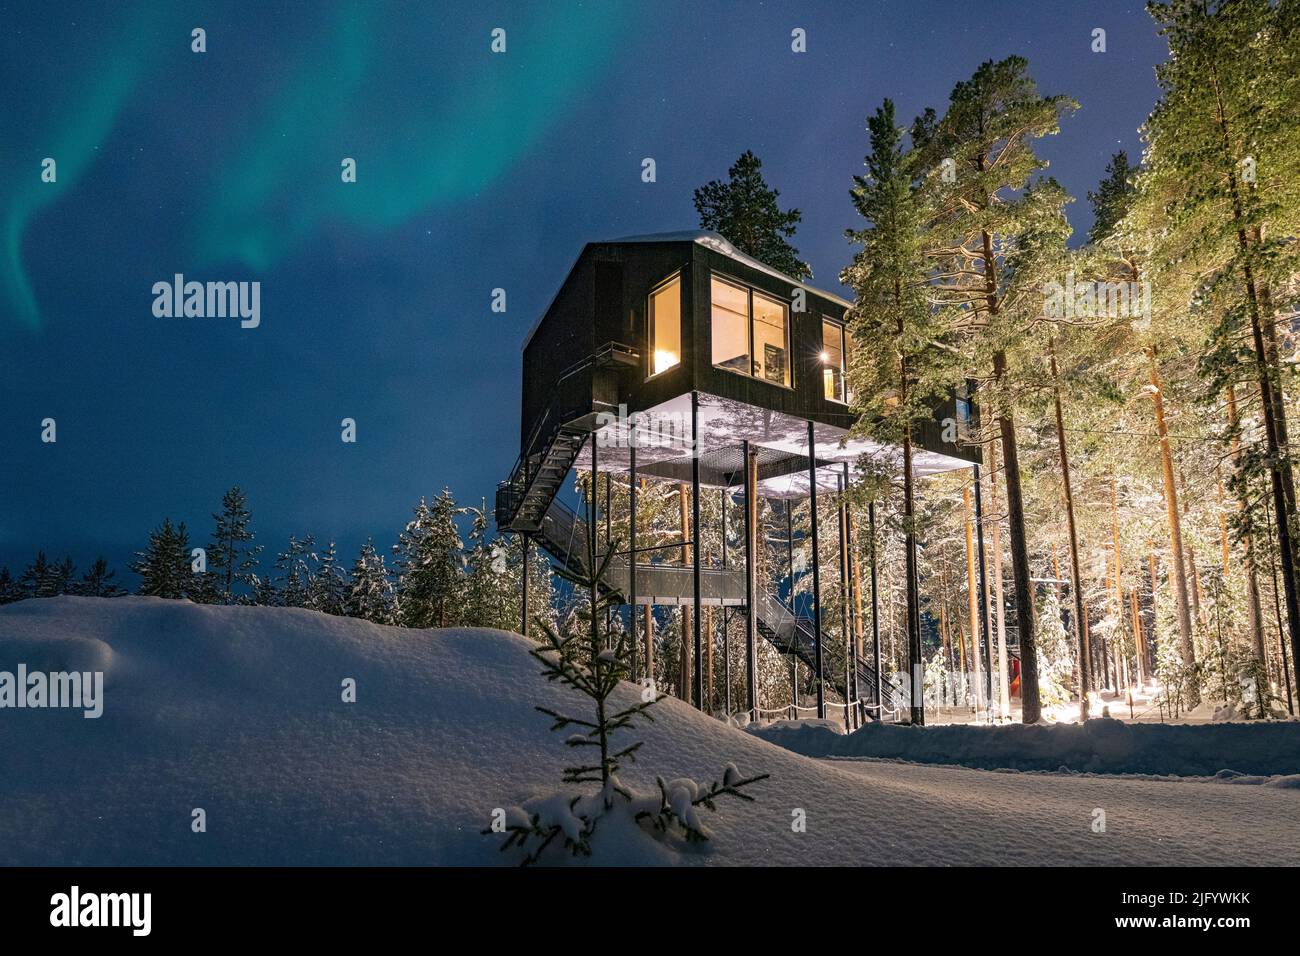 Aurora Borealis (aurores boréales) au-dessus du chalet en bois situé parmi les arbres dans la neige, Tree Hotel, Harads, Laponie, Suède, Scandinavie, Europe Banque D'Images